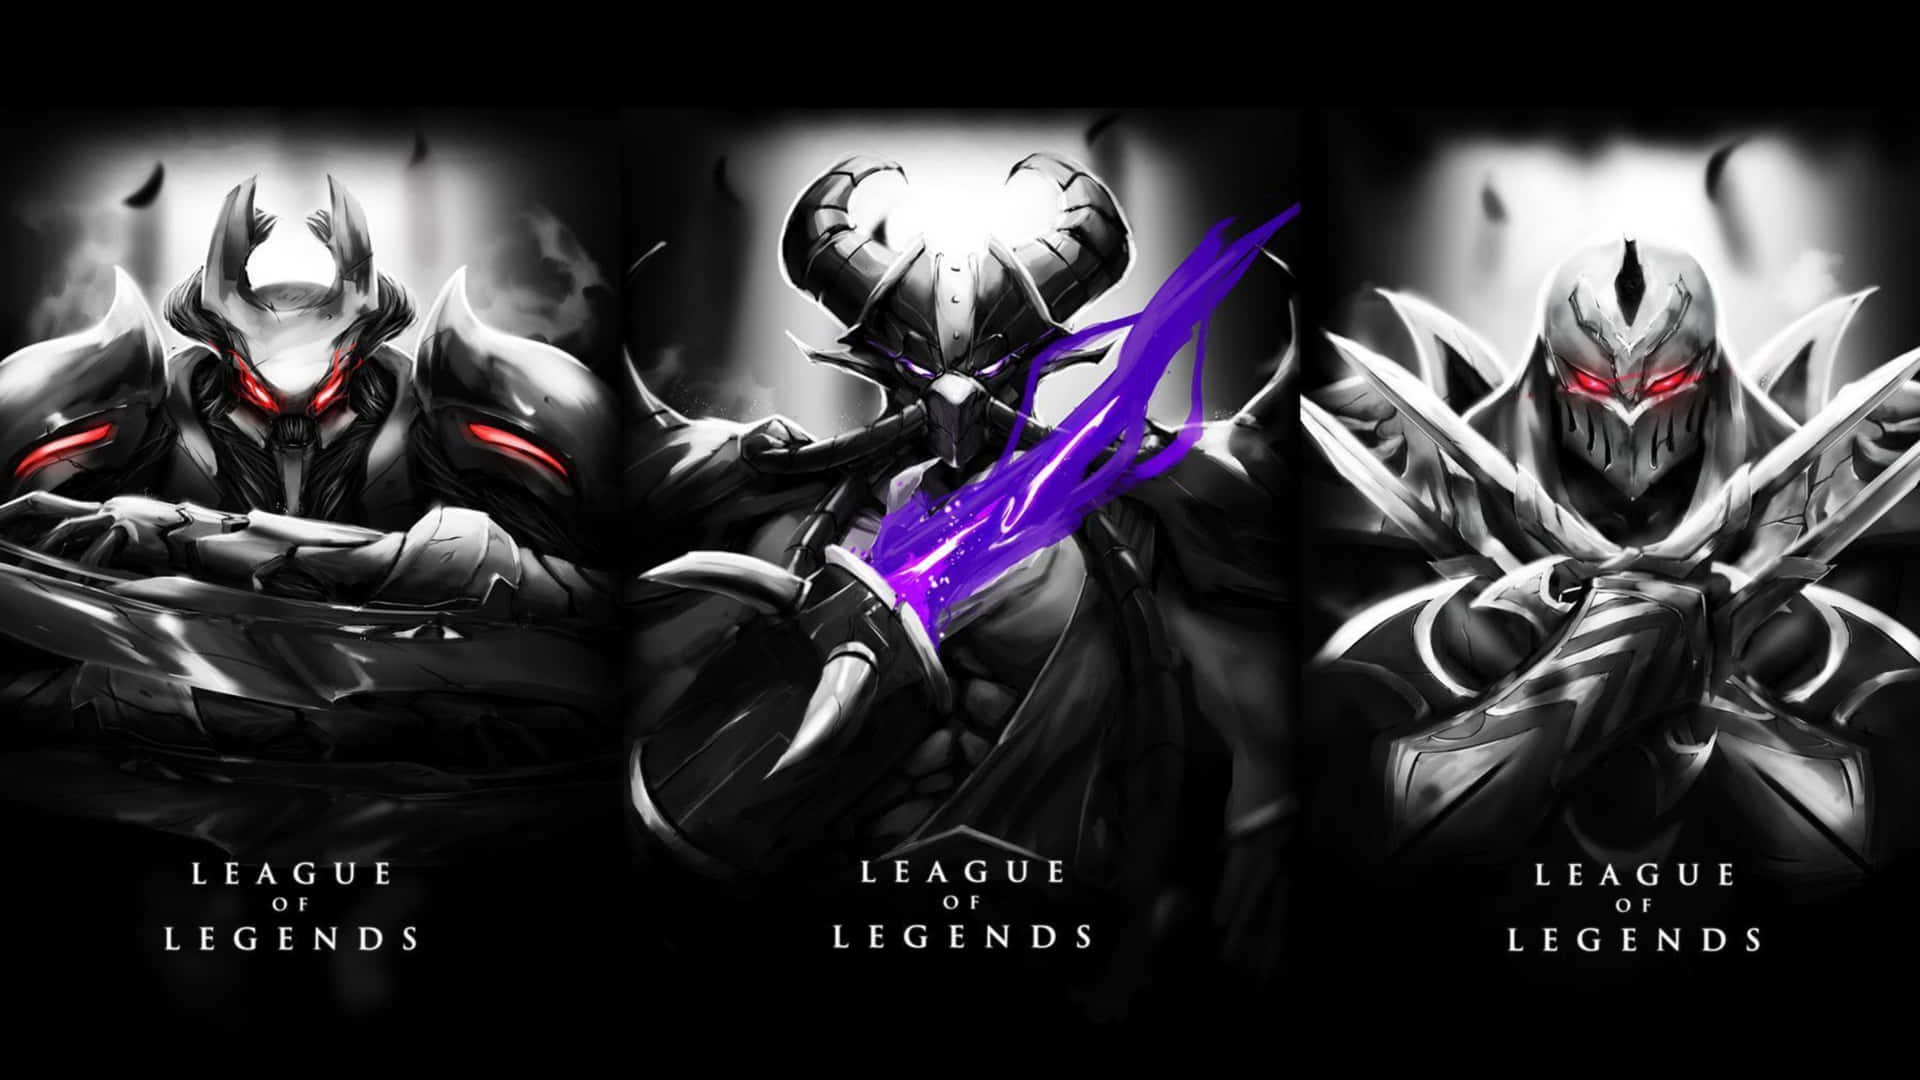 Chamesua Equipe E Junte-se À Batalha De League Of Legends Em 4k!